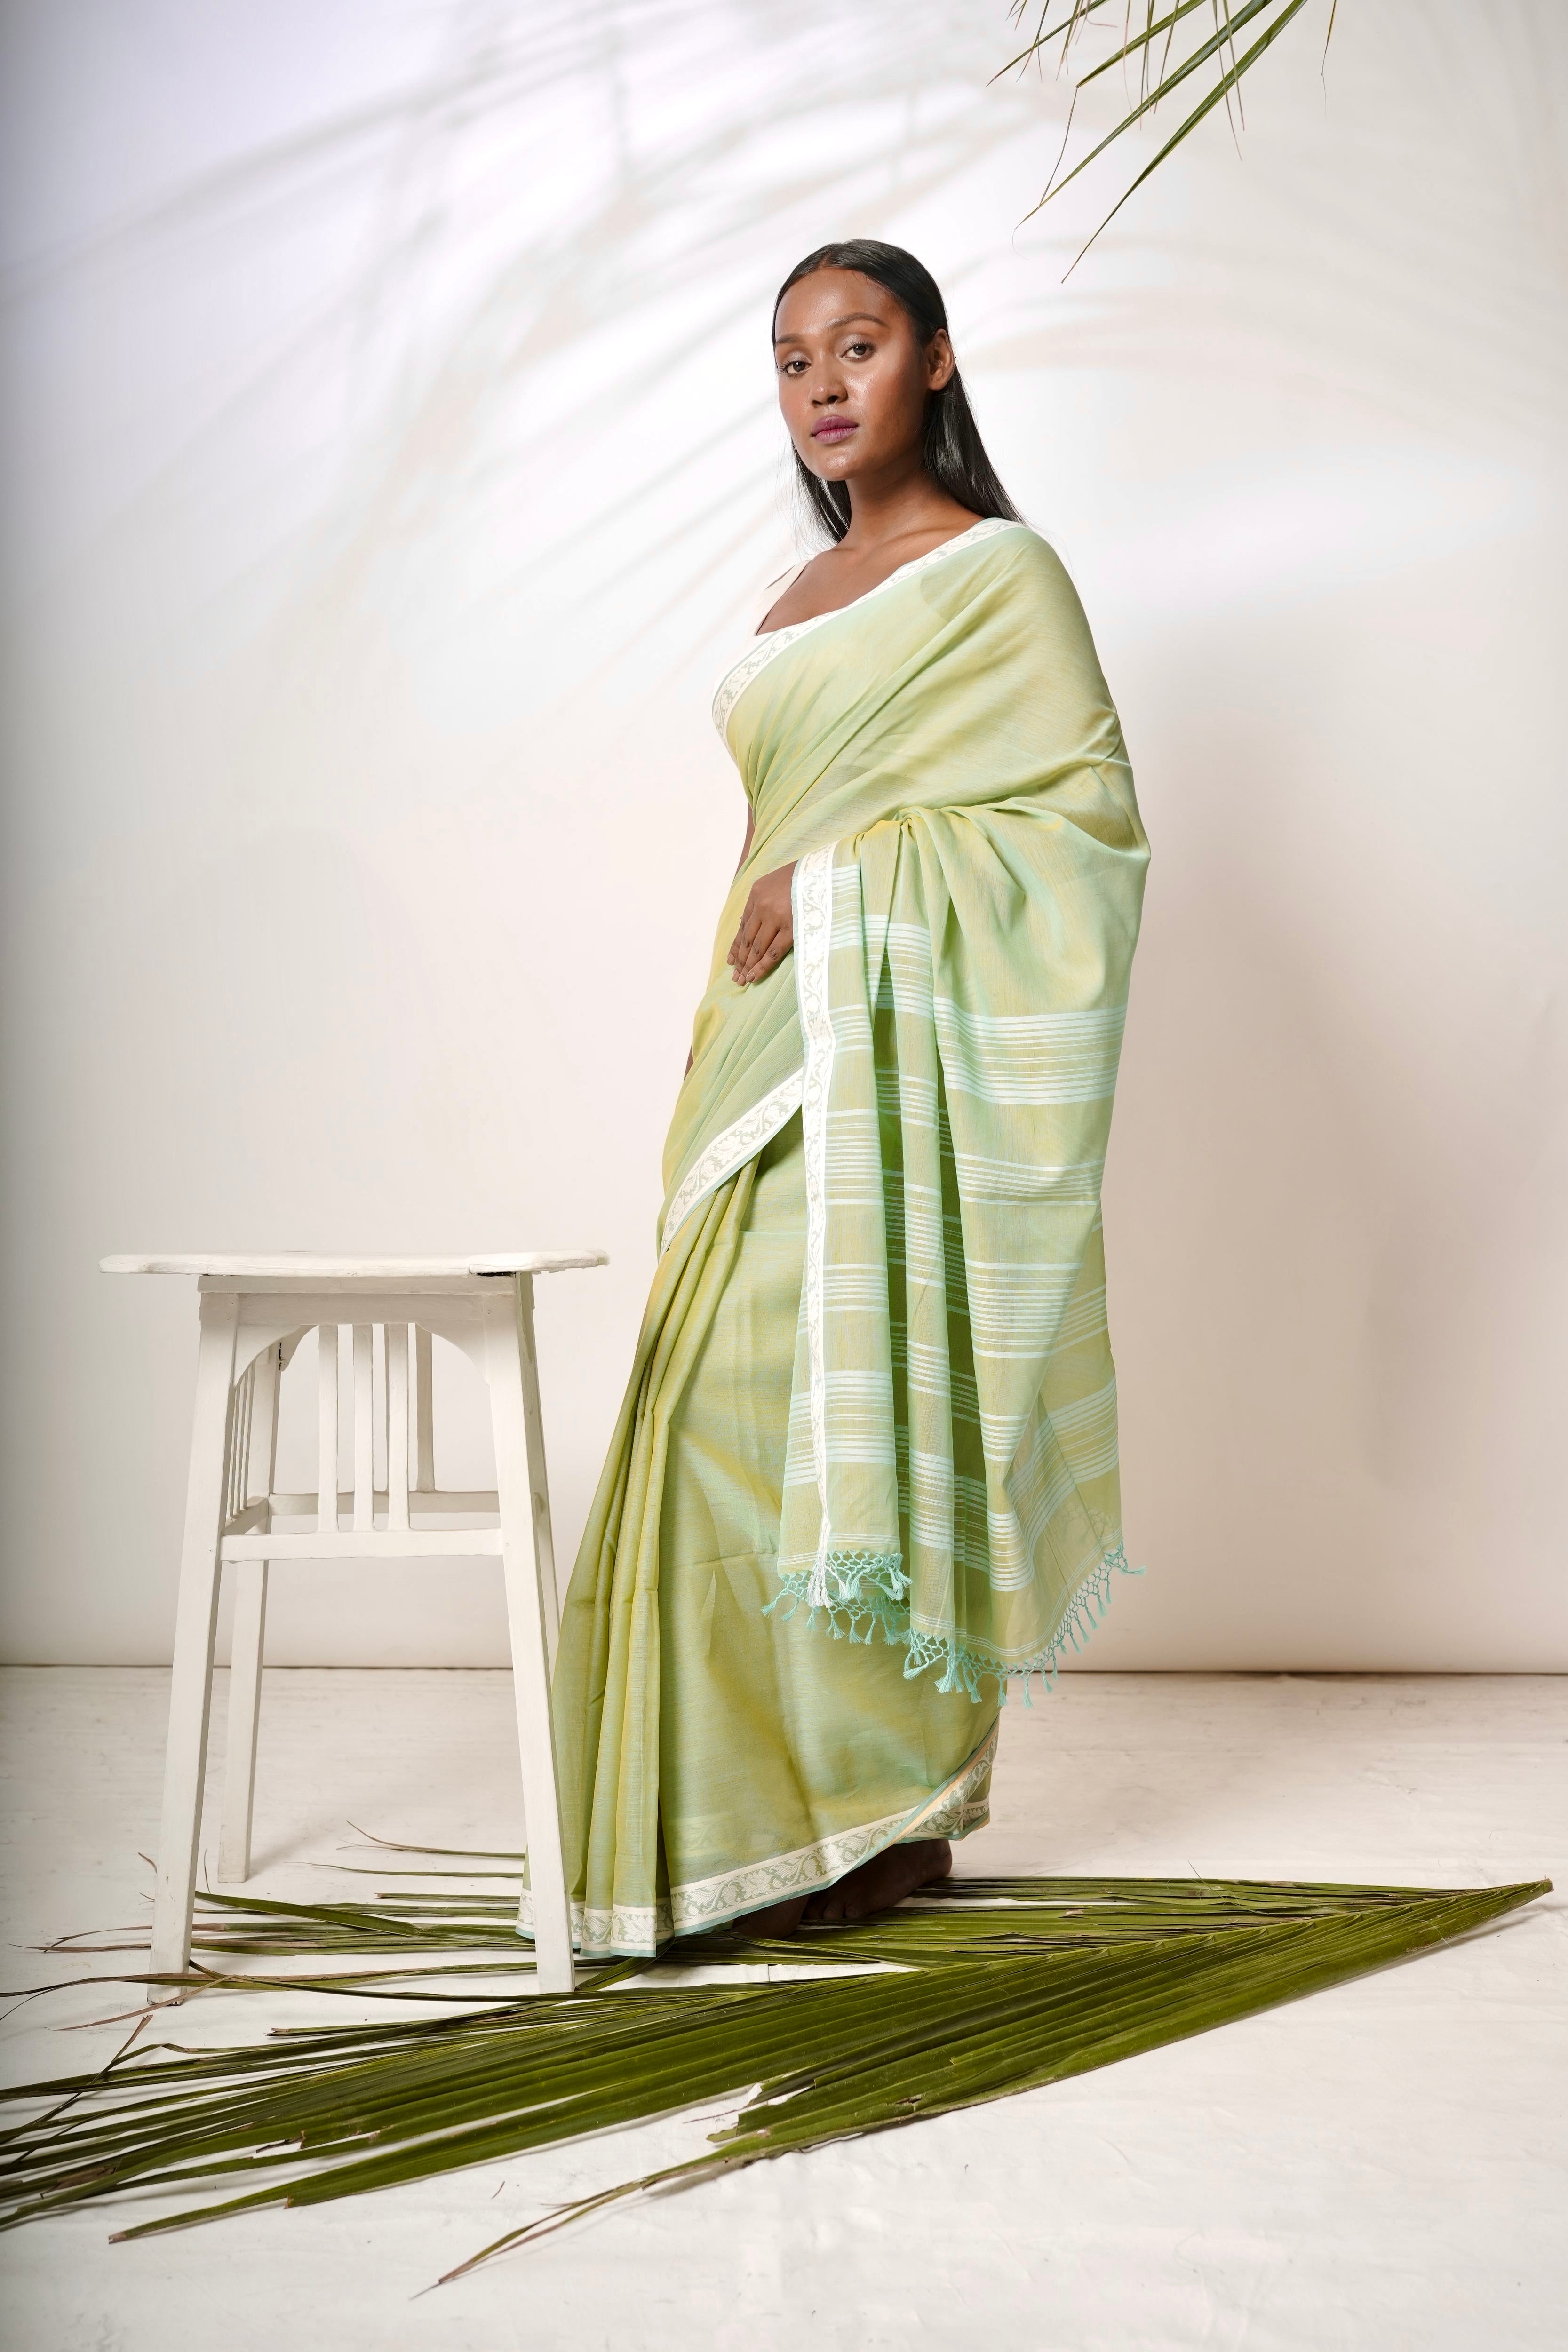 Luminous I  Light green cotton saree with white border